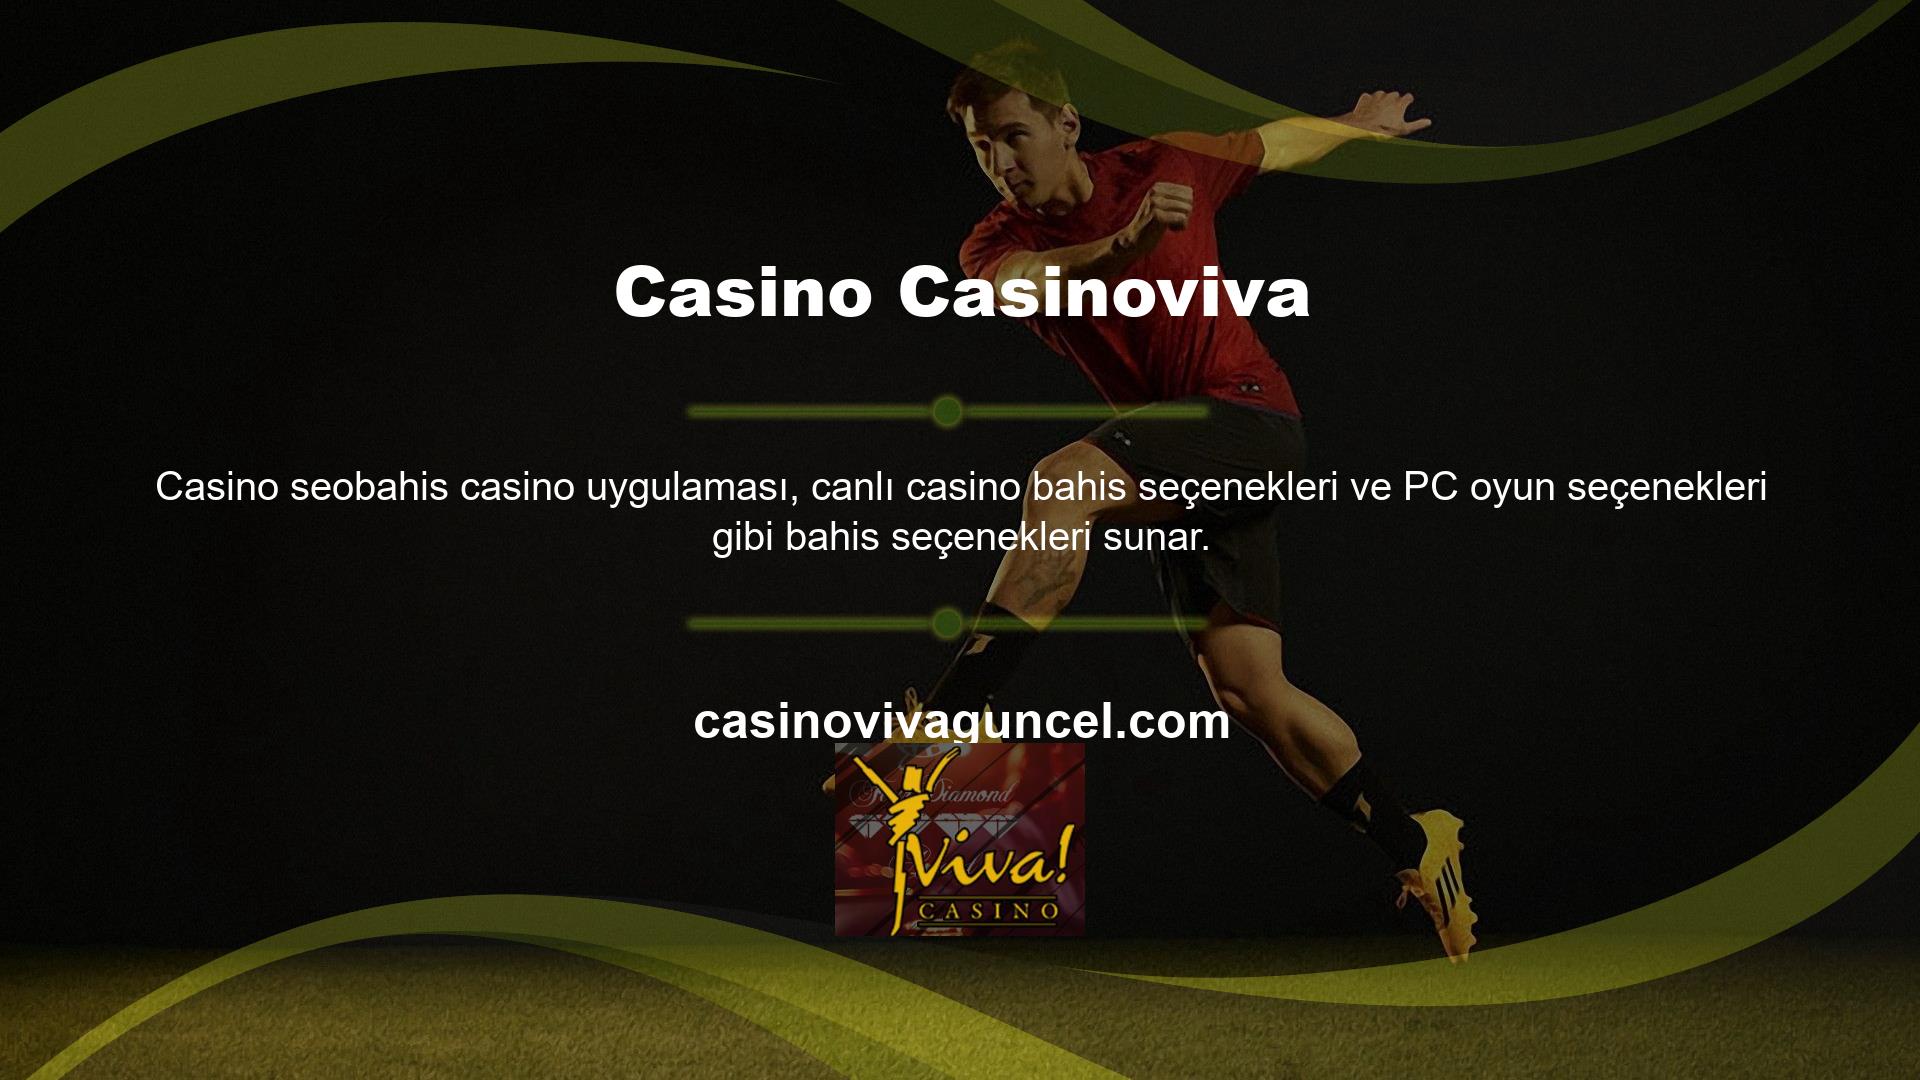 Sanal bahis şeklinde bahis seçenekleri sunan Casinoviva Casino uygulaması, müşterileri için geniş bir bahis teklifleri arşivine sahiptir